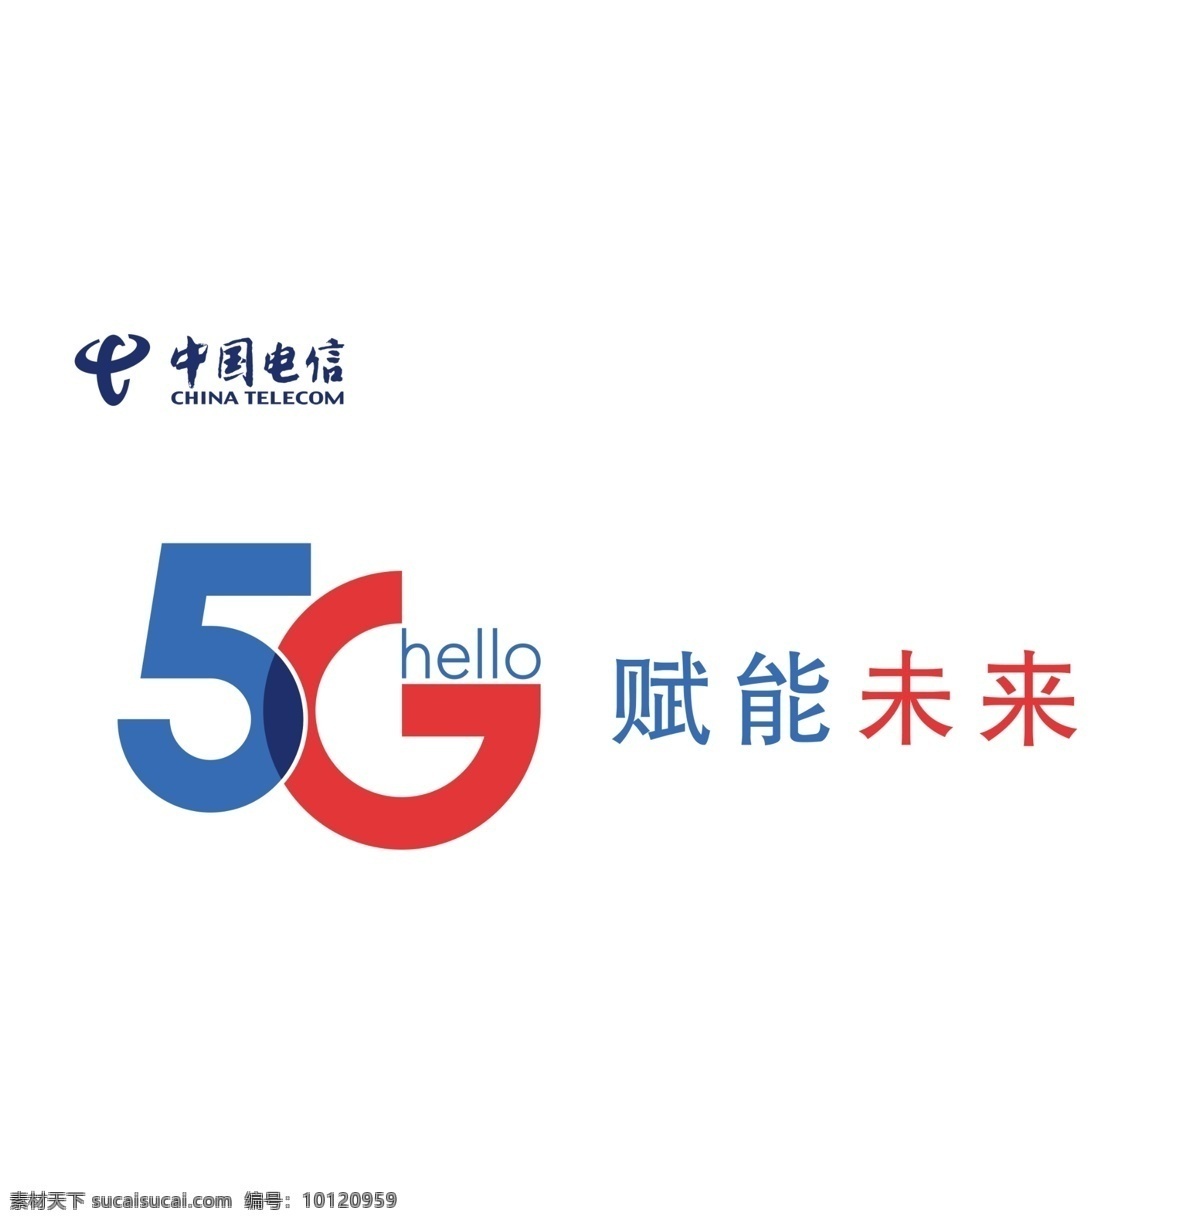 中国电信图标 天翼logo 天翼图标 电信4g 中国电信标志 中国电信标识 标志图标 企业 logo 标志